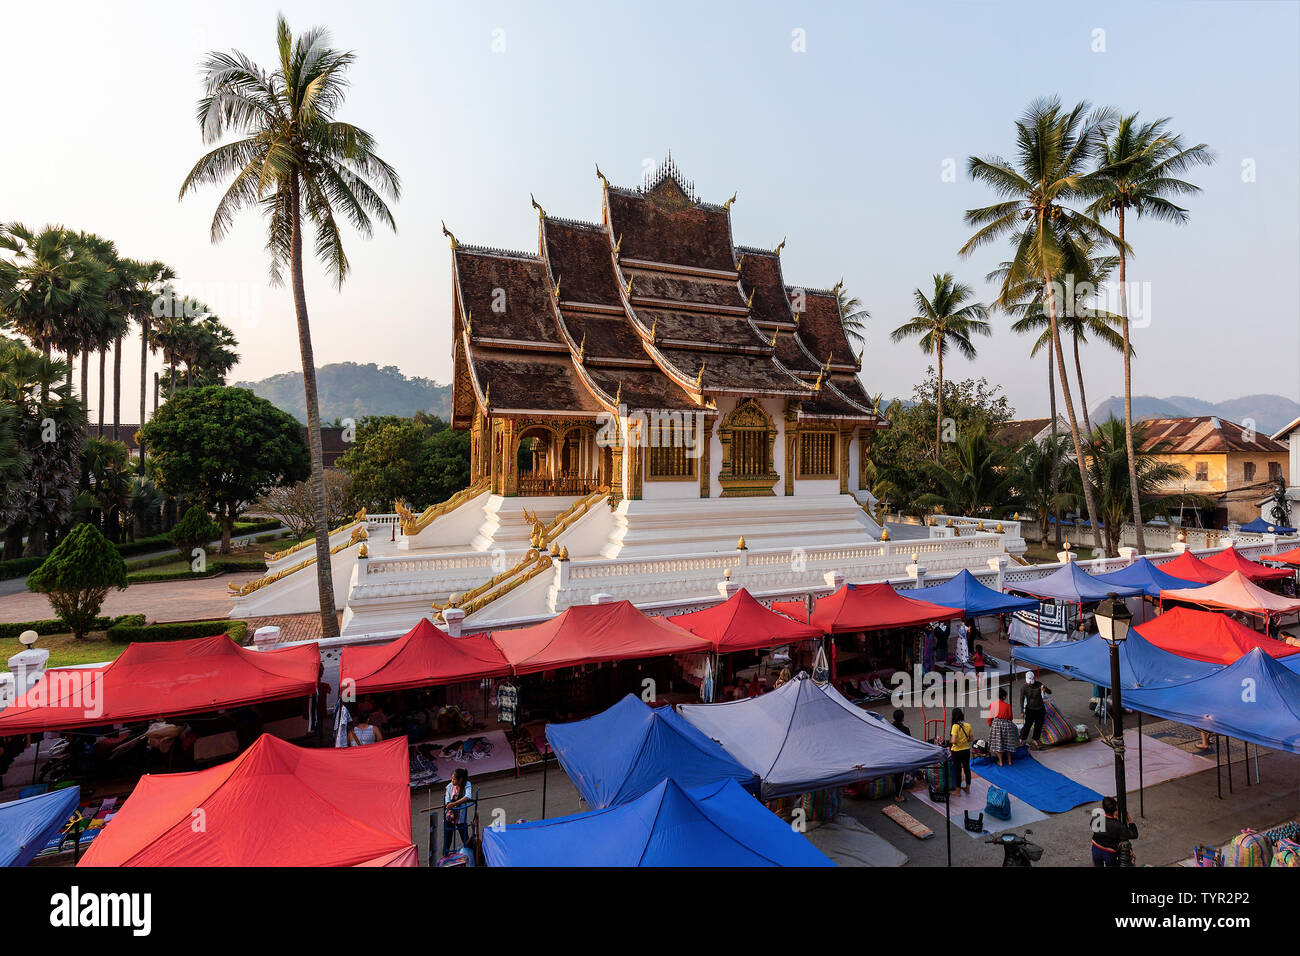 LUANG PRABANG, LAOS - MARCH 2019; Haw Pha Bang Temple Stock Photo